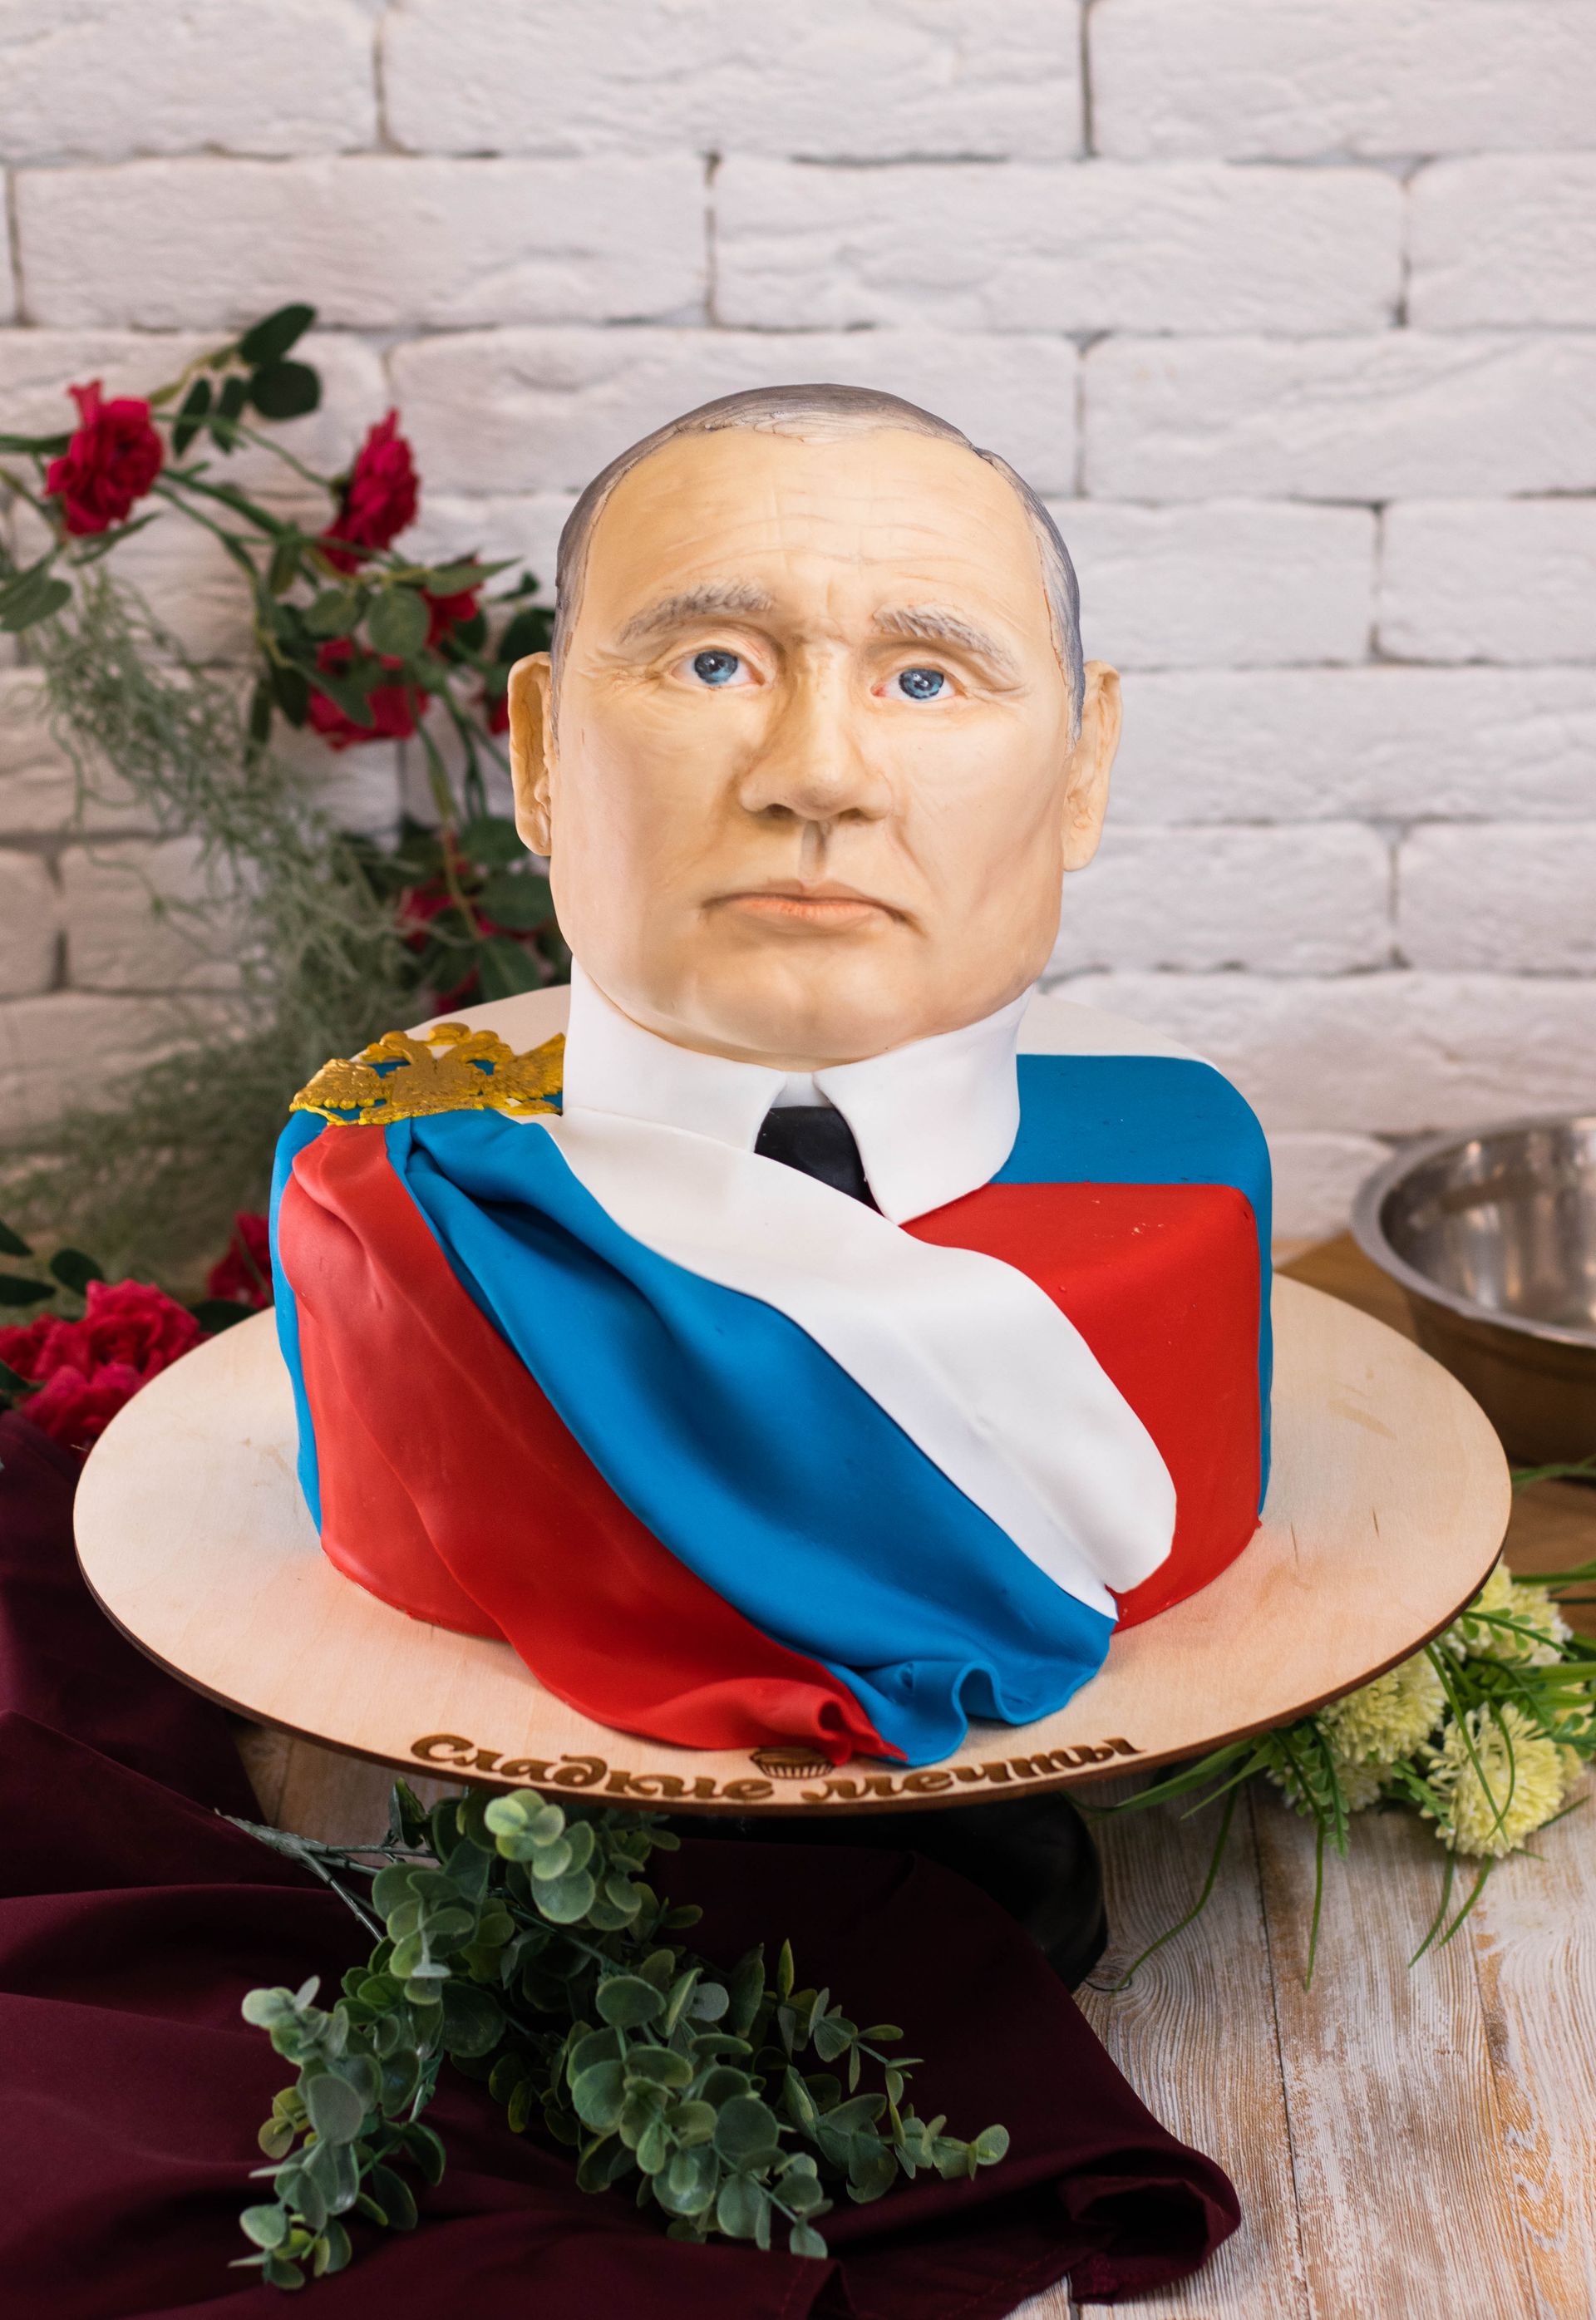 Самый дорогой торт в виде головы действующего Президента России в импровизированной выставке «Лидеры и вожди России» обошелся покупателю в 6900 рублей.